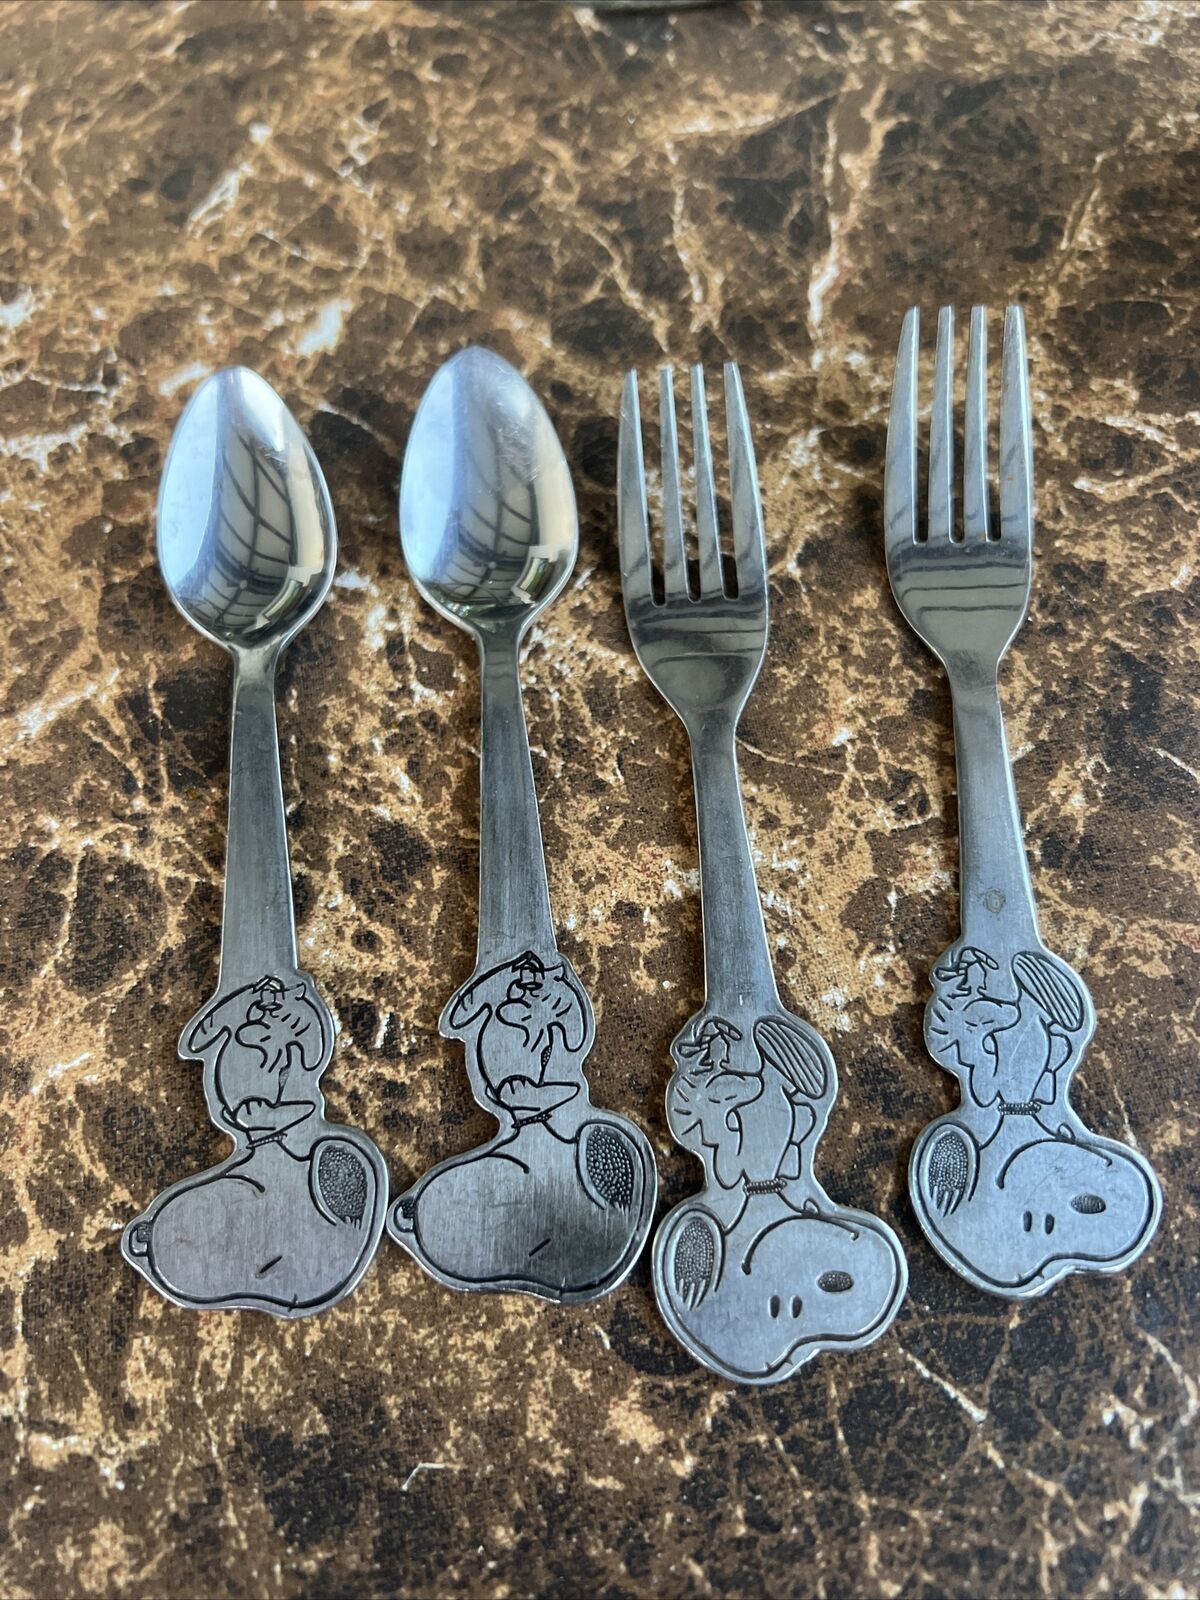 DANARA Vintage 2 Spoons/2 Forks, Snoopy, NICE 1958 1965